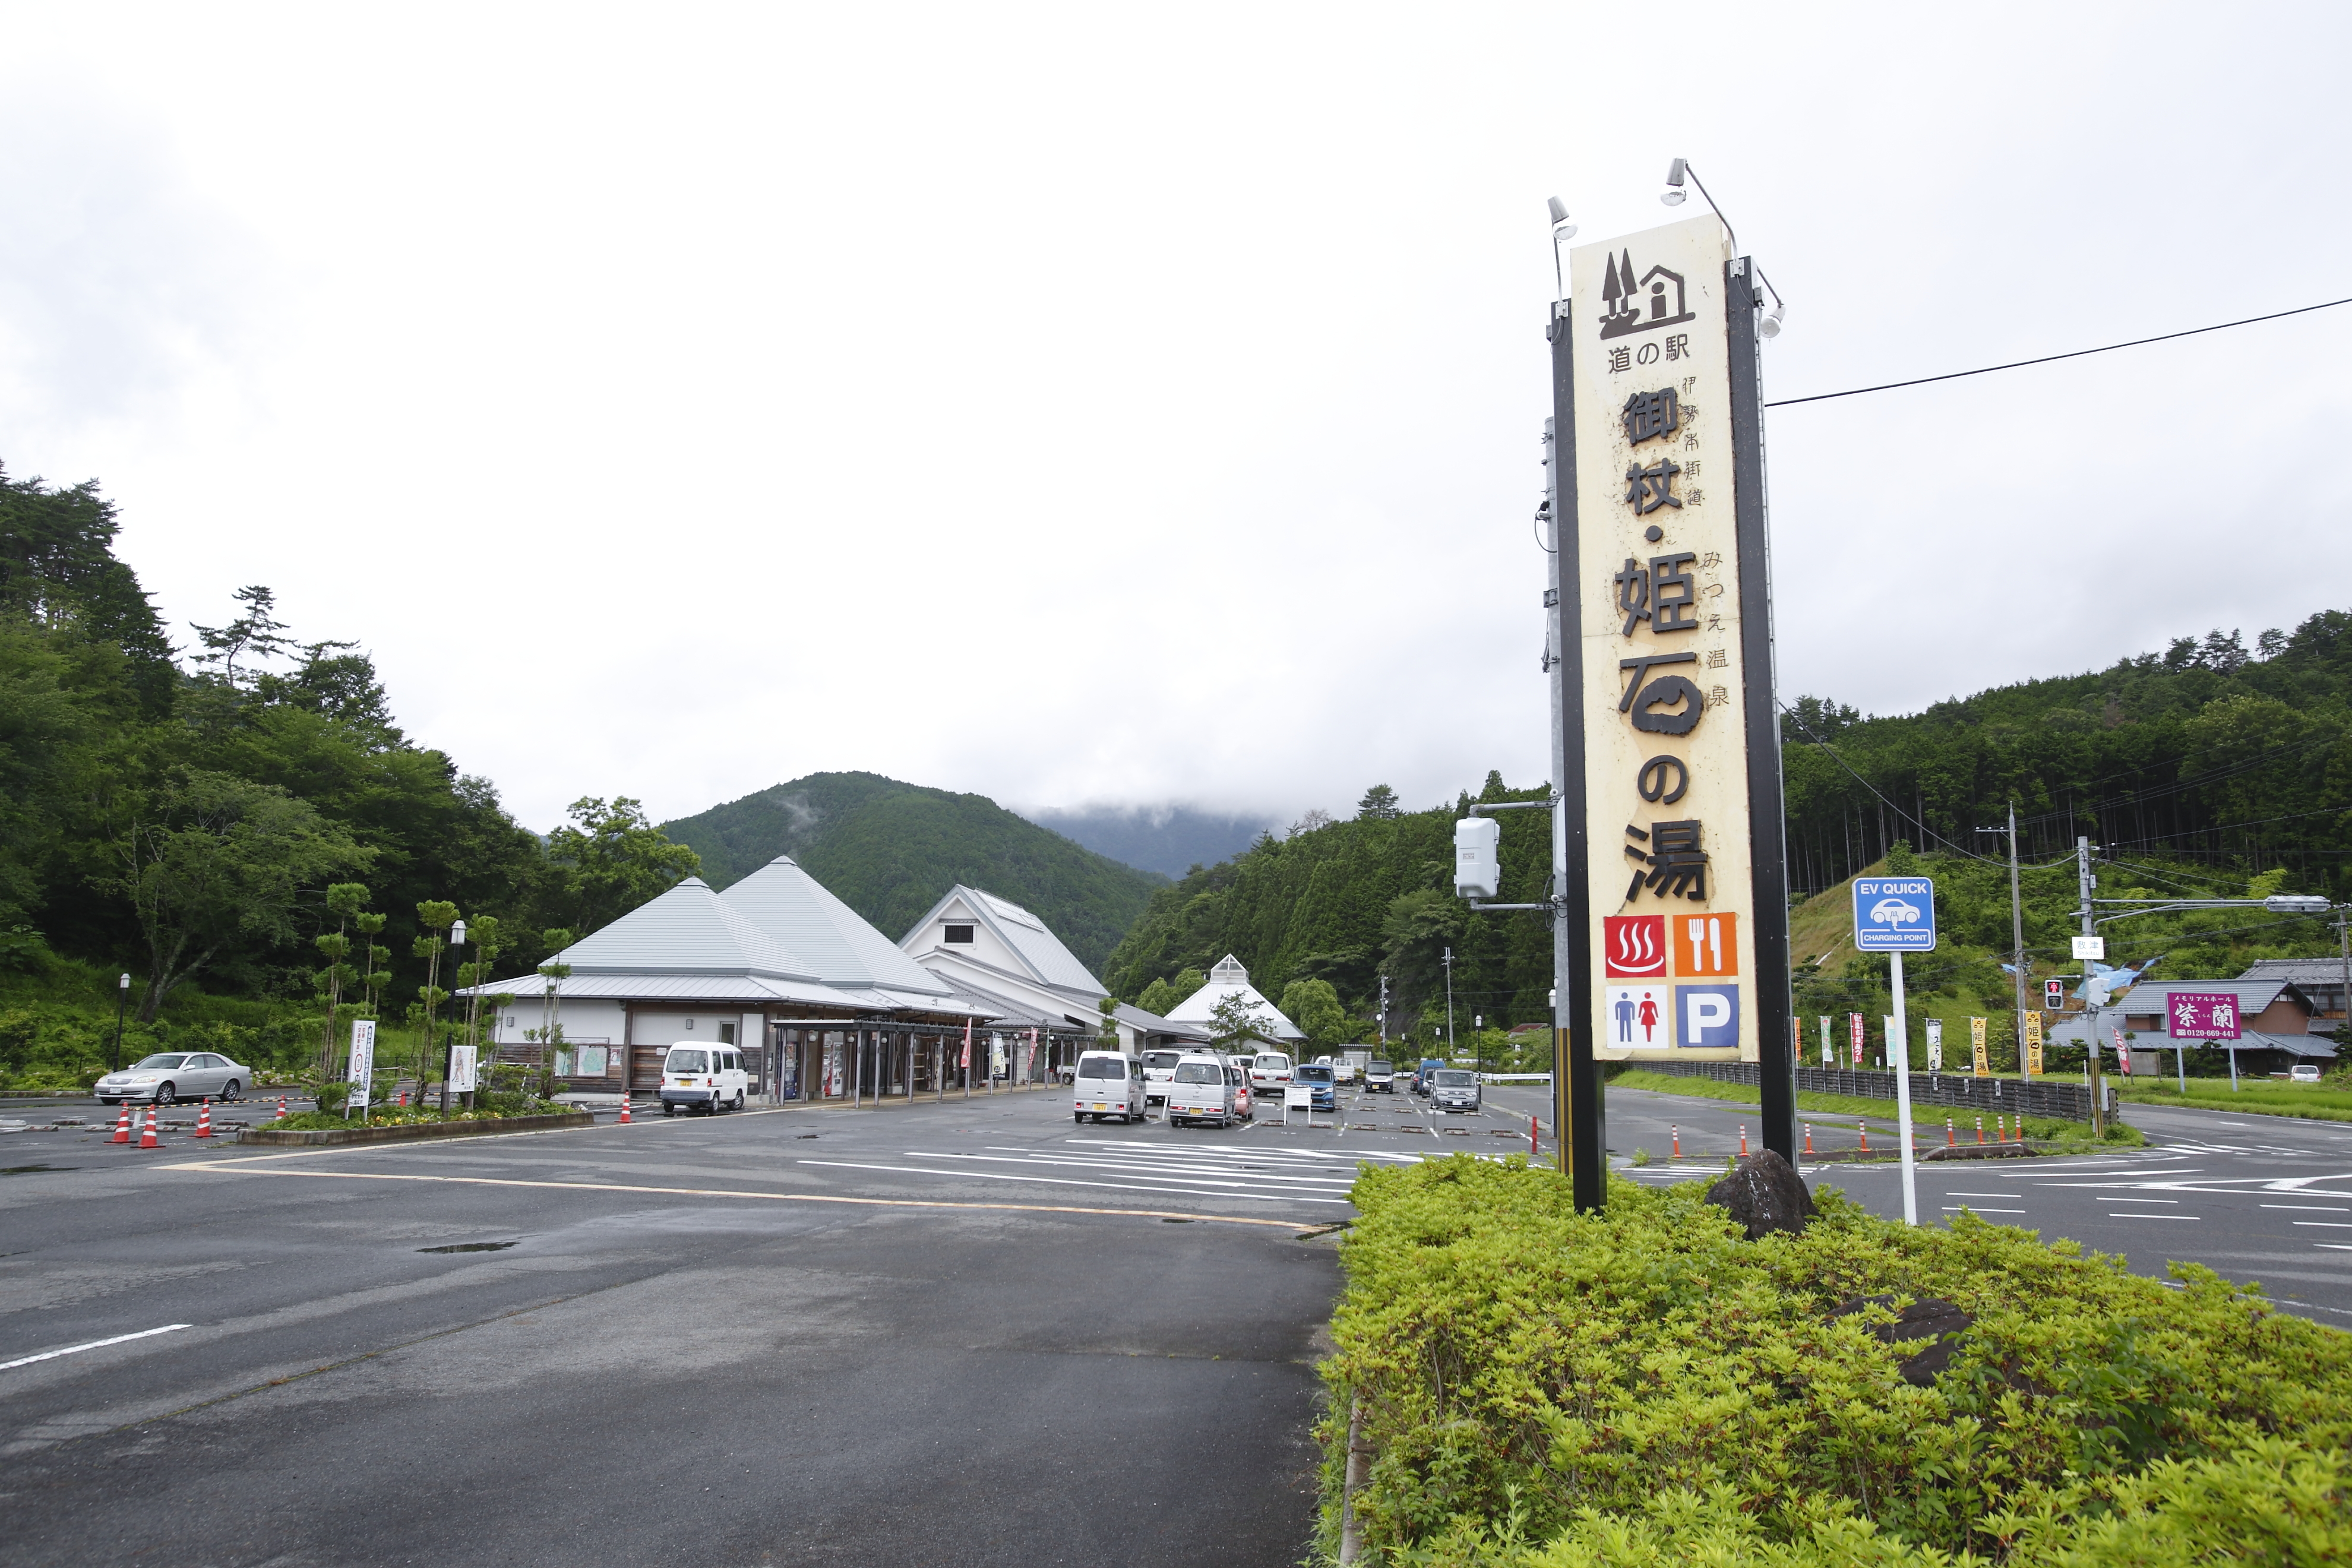 奈良県の道の駅といえばここ 選りすぐり10選 カーナリズム